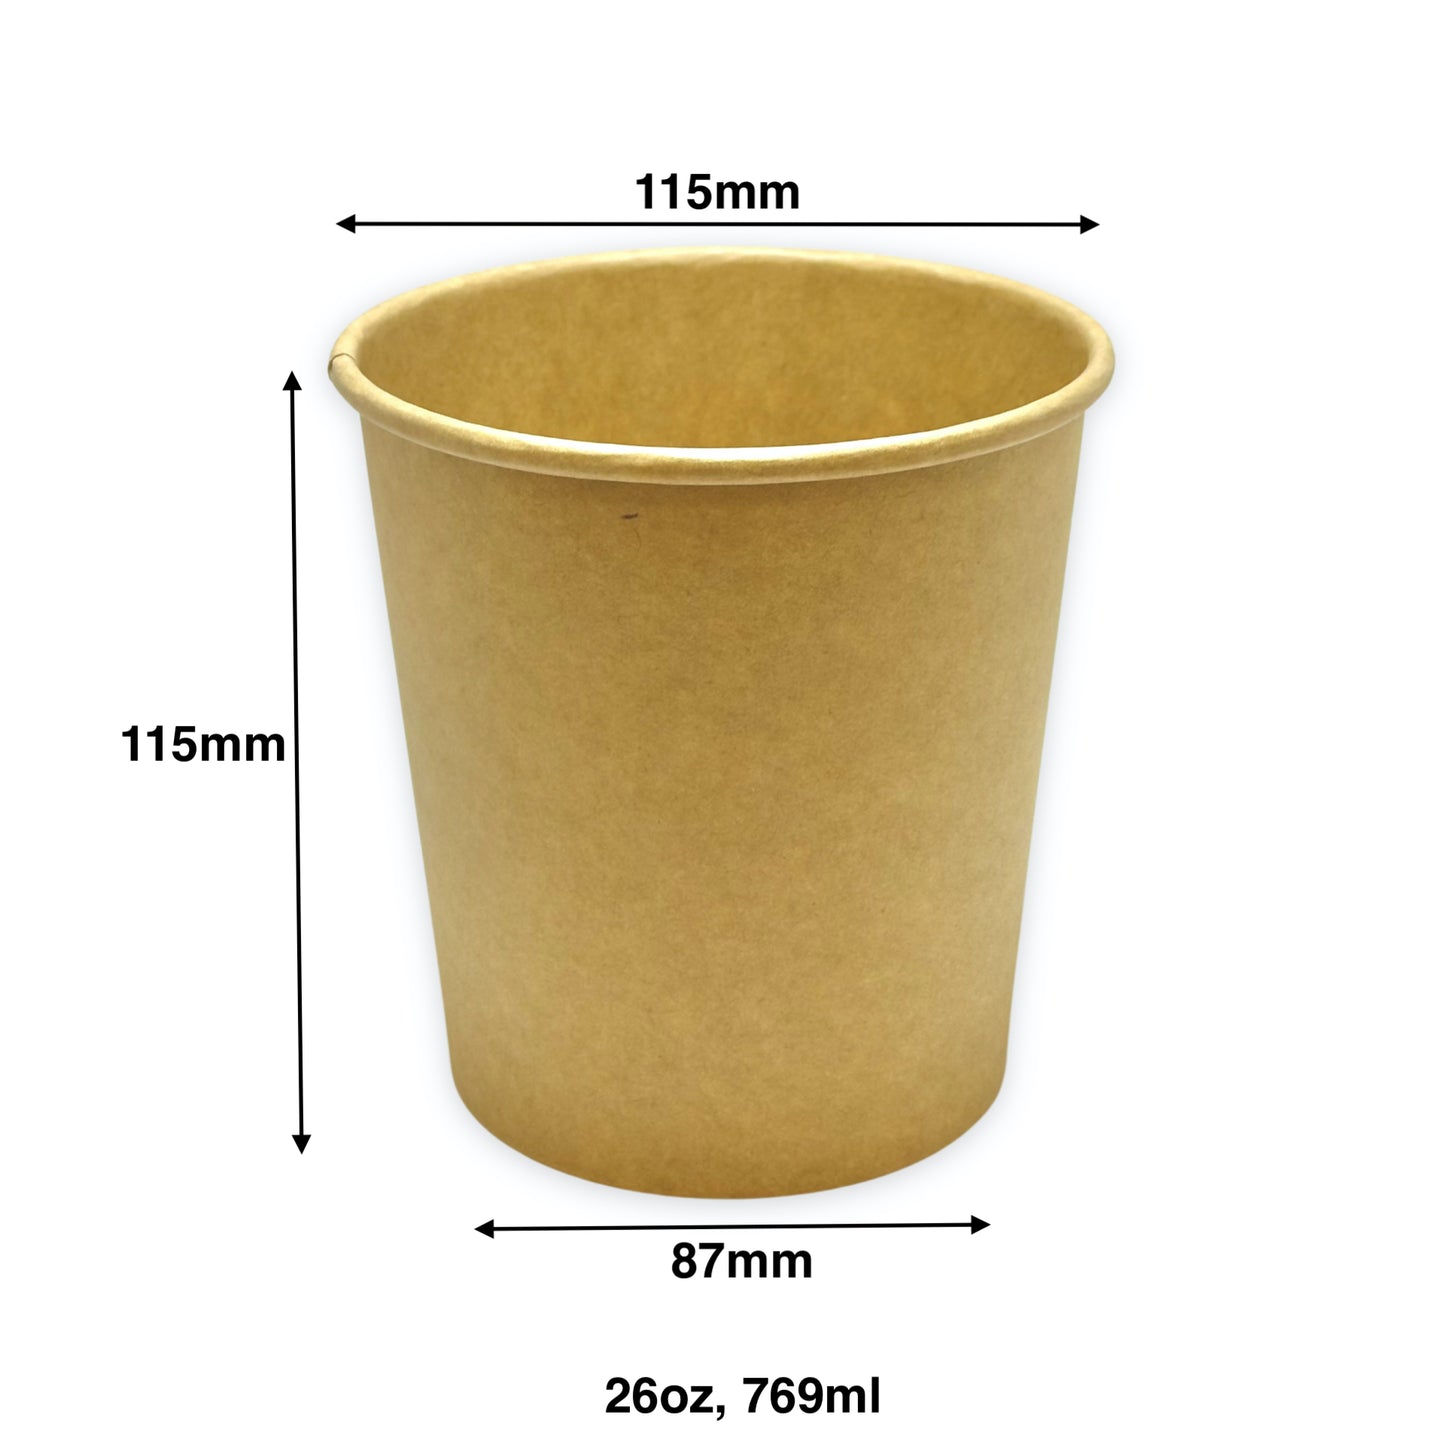 KIS-SC26 | 26oz, 769ml Kraft Paper Soup Cup Base; From $0.17/pc